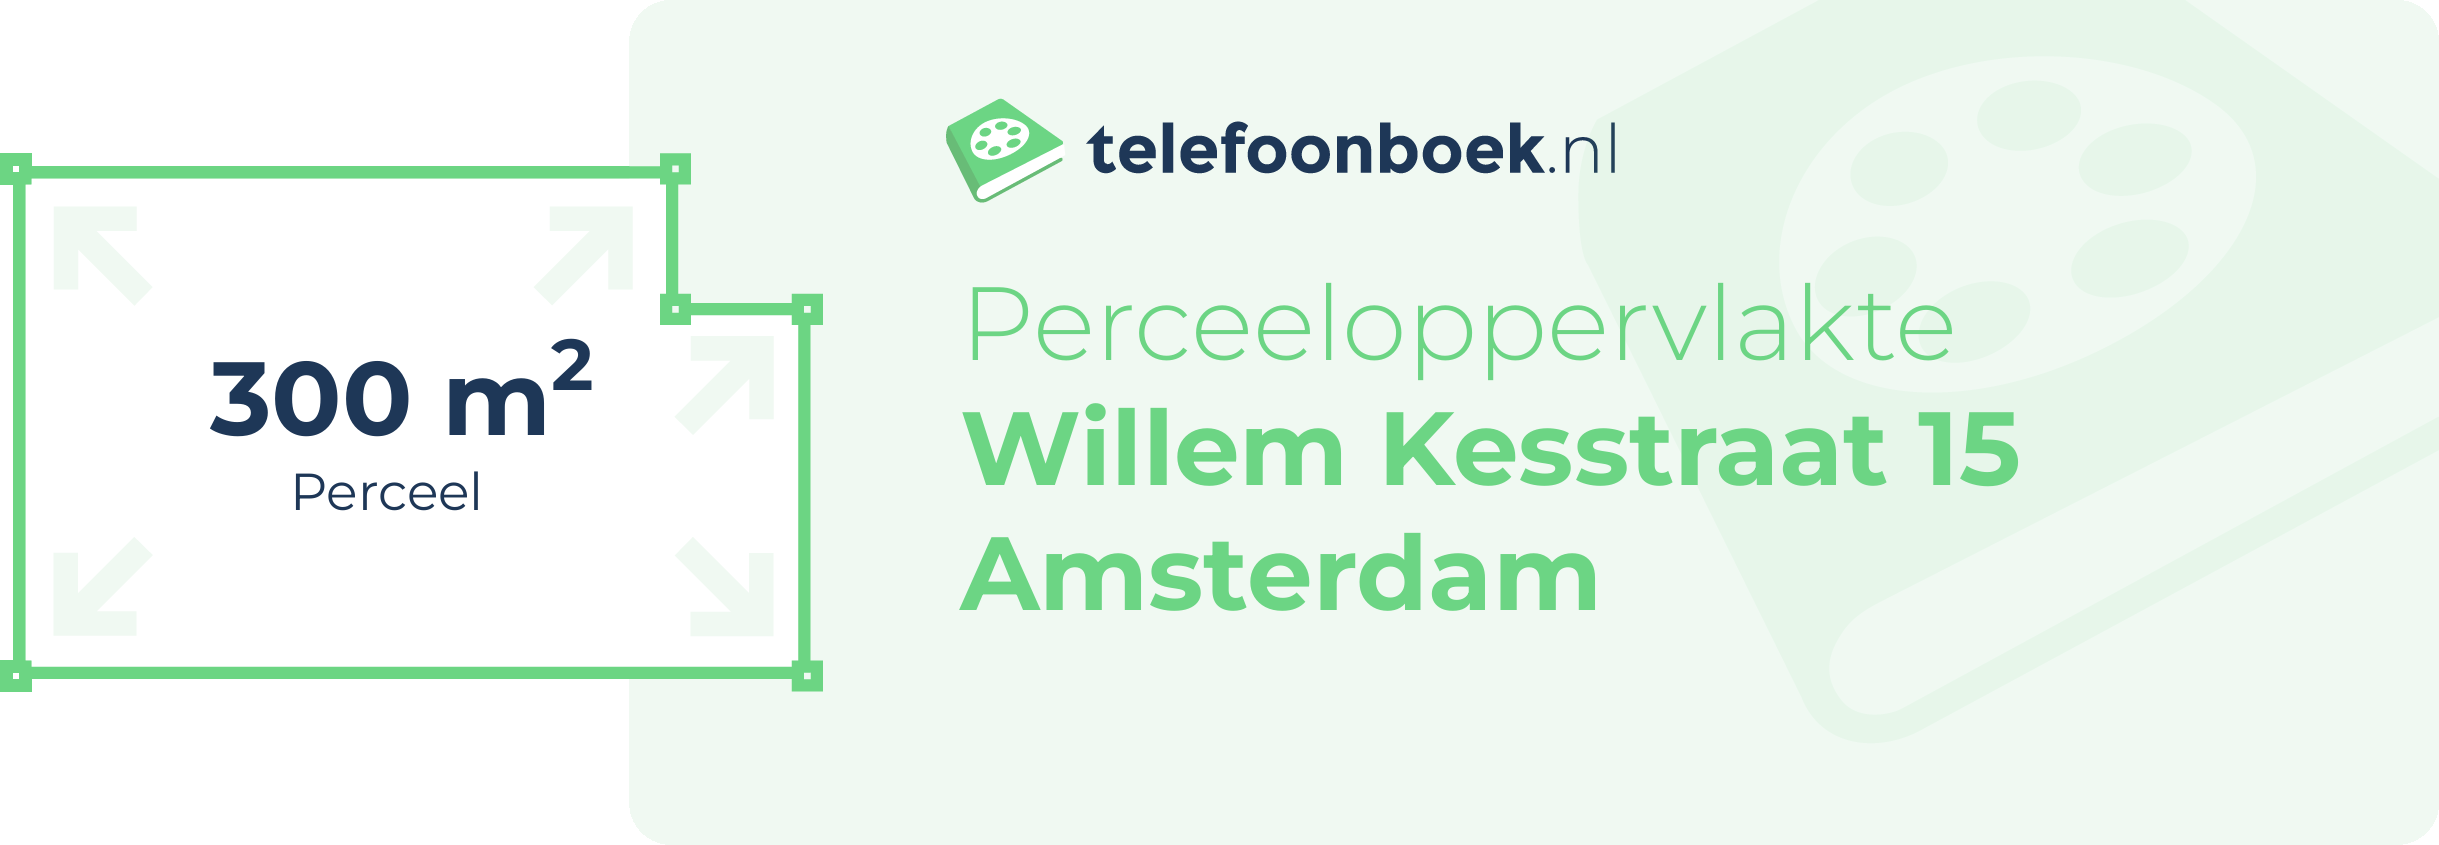 Perceeloppervlakte Willem Kesstraat 15 Amsterdam